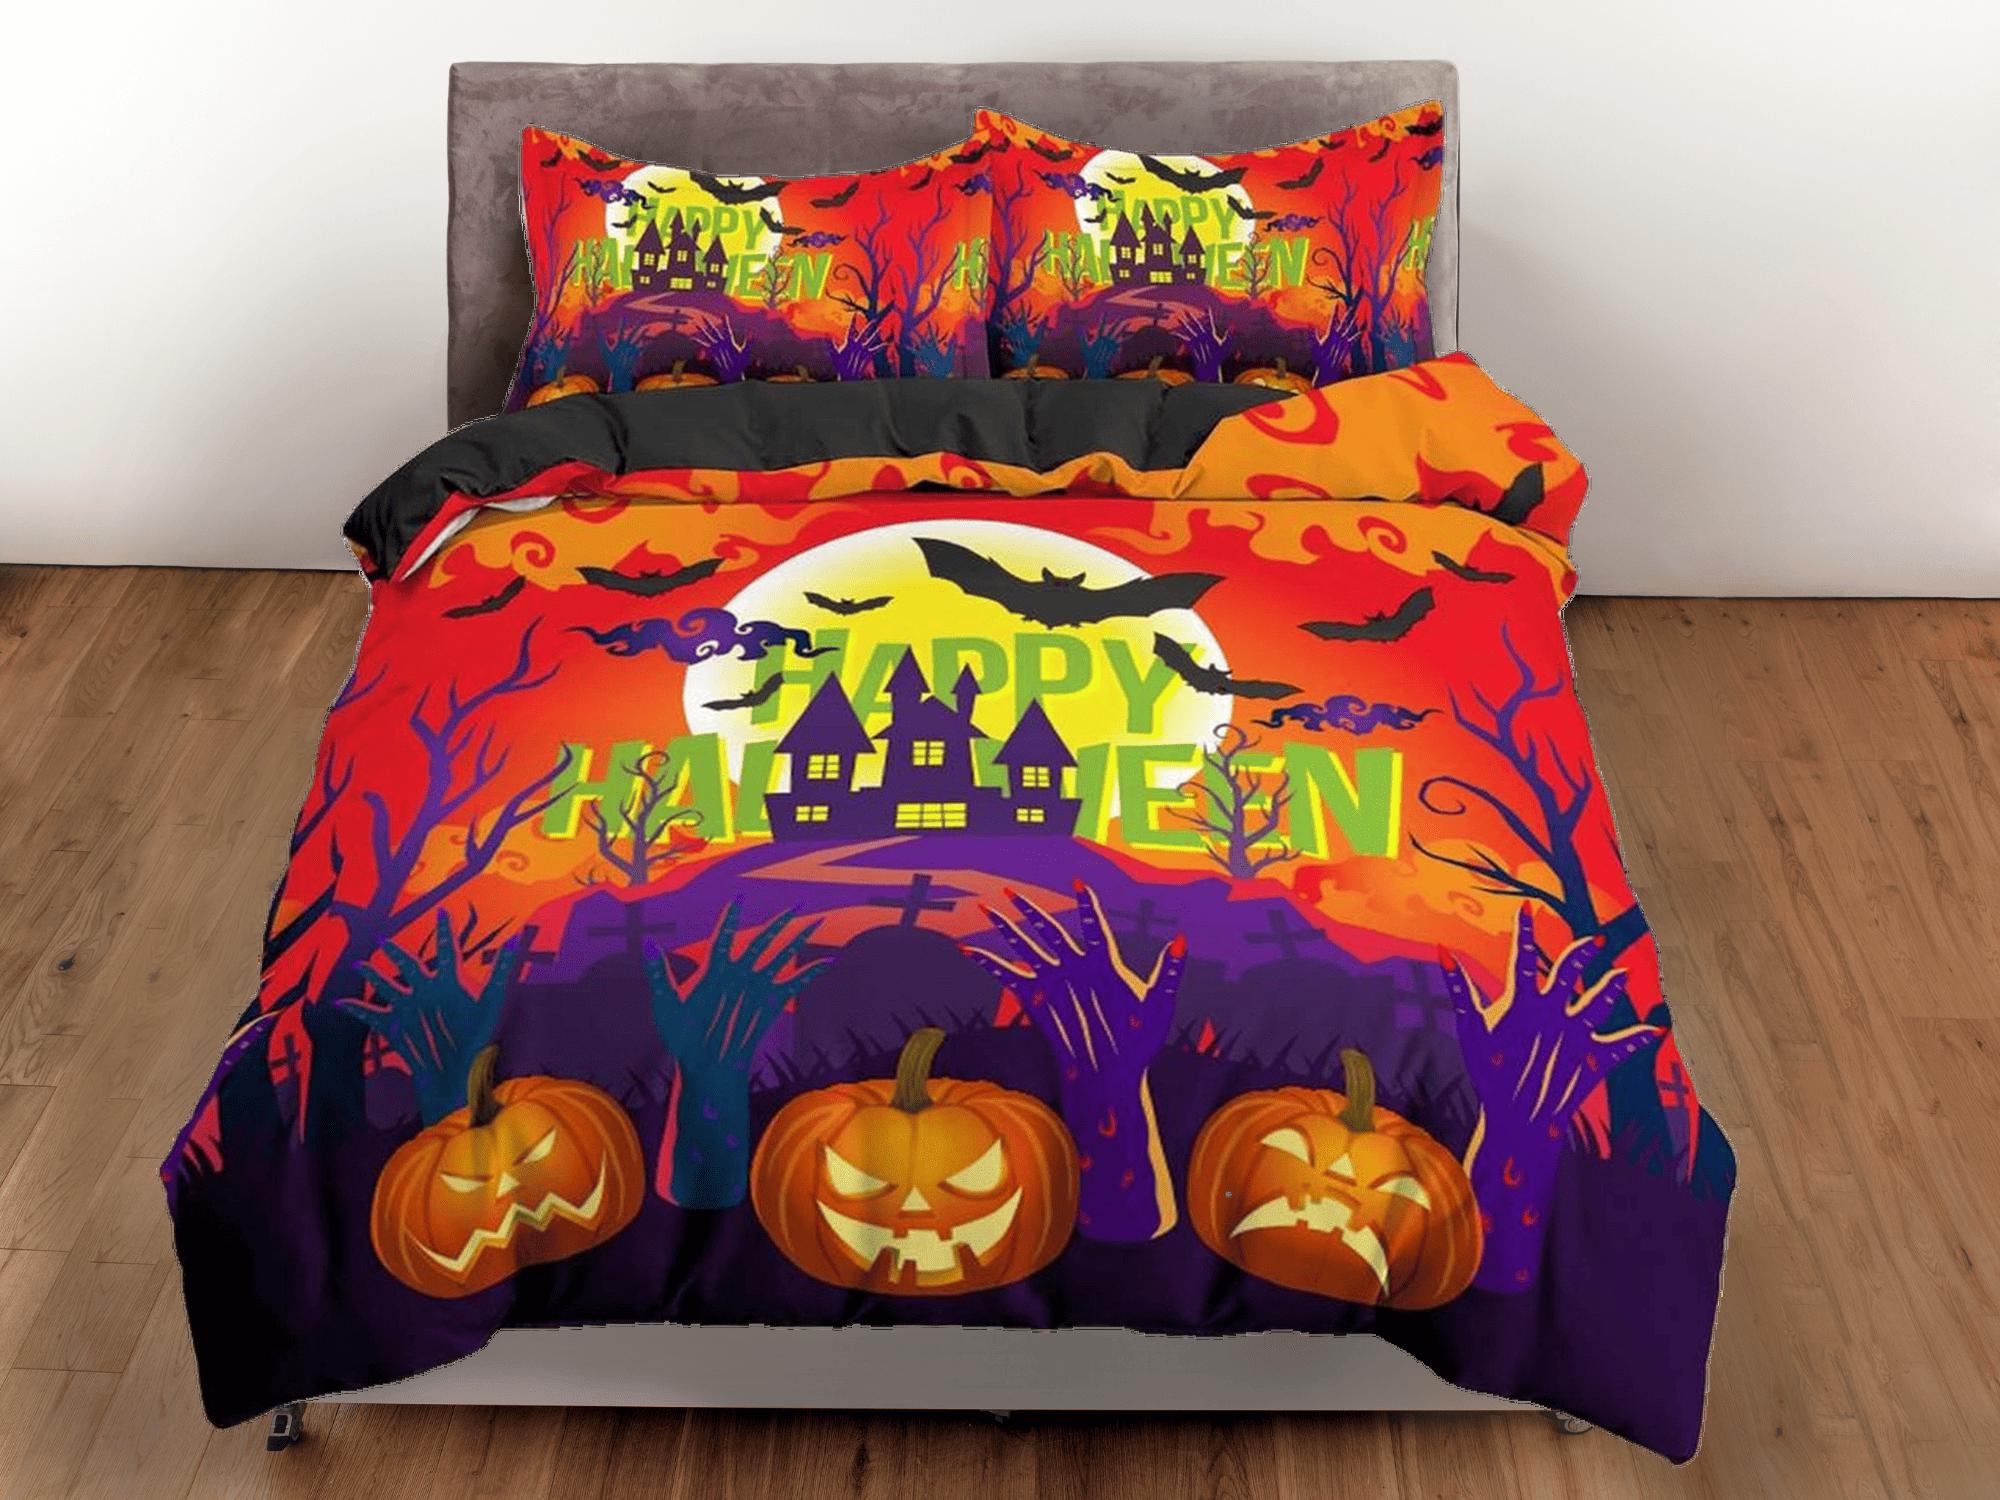 daintyduvet Happy halloween castle full size bedding & pillowcase, duvet cover set dorm bedding, halloween decor, nursery toddler bedding halloween gift